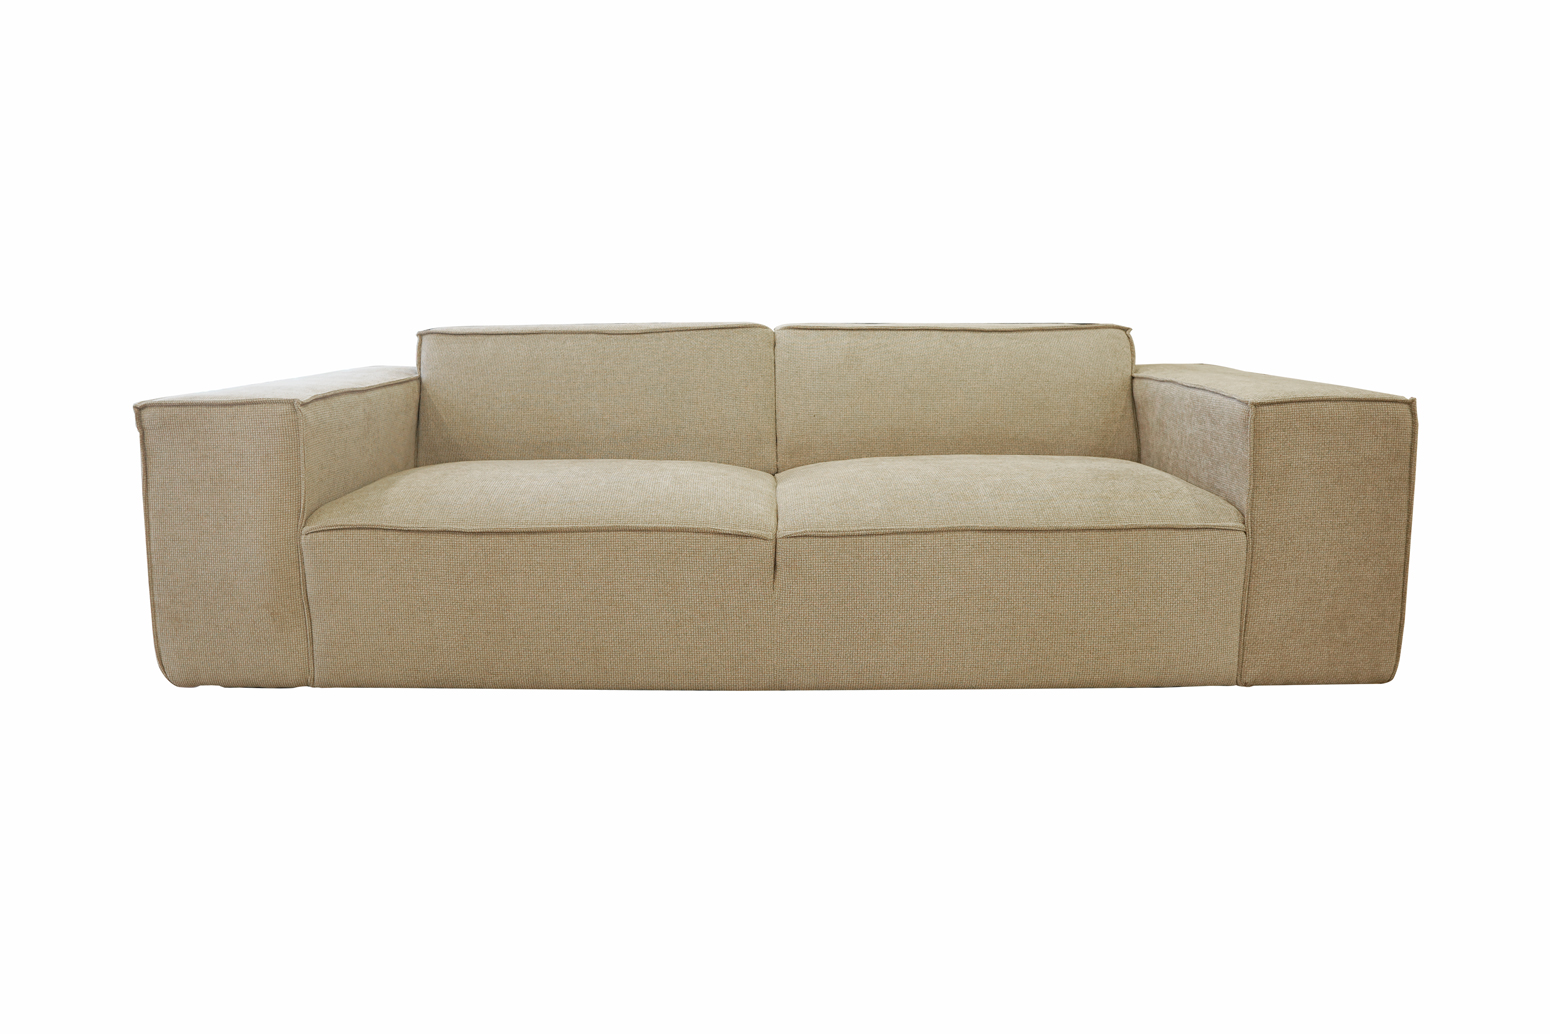 Sofa 3 chỗ | JYSK nID-001 | vải polyester | nhiều màu | R230xS97.5xC66cm